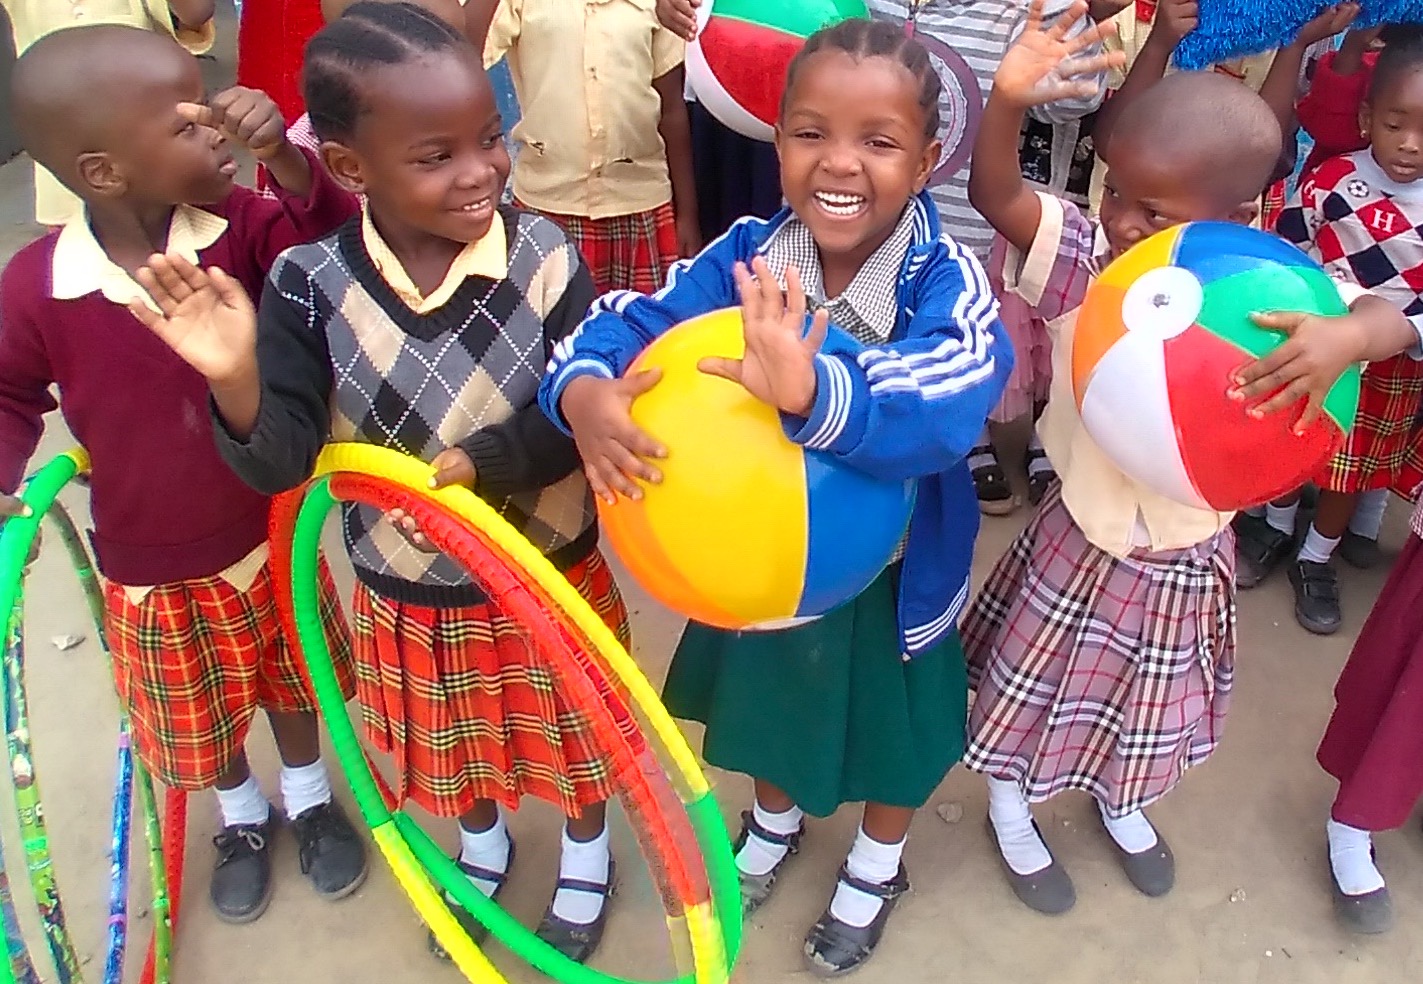 Sparking Joy Through Play - Living Water Children's Fund